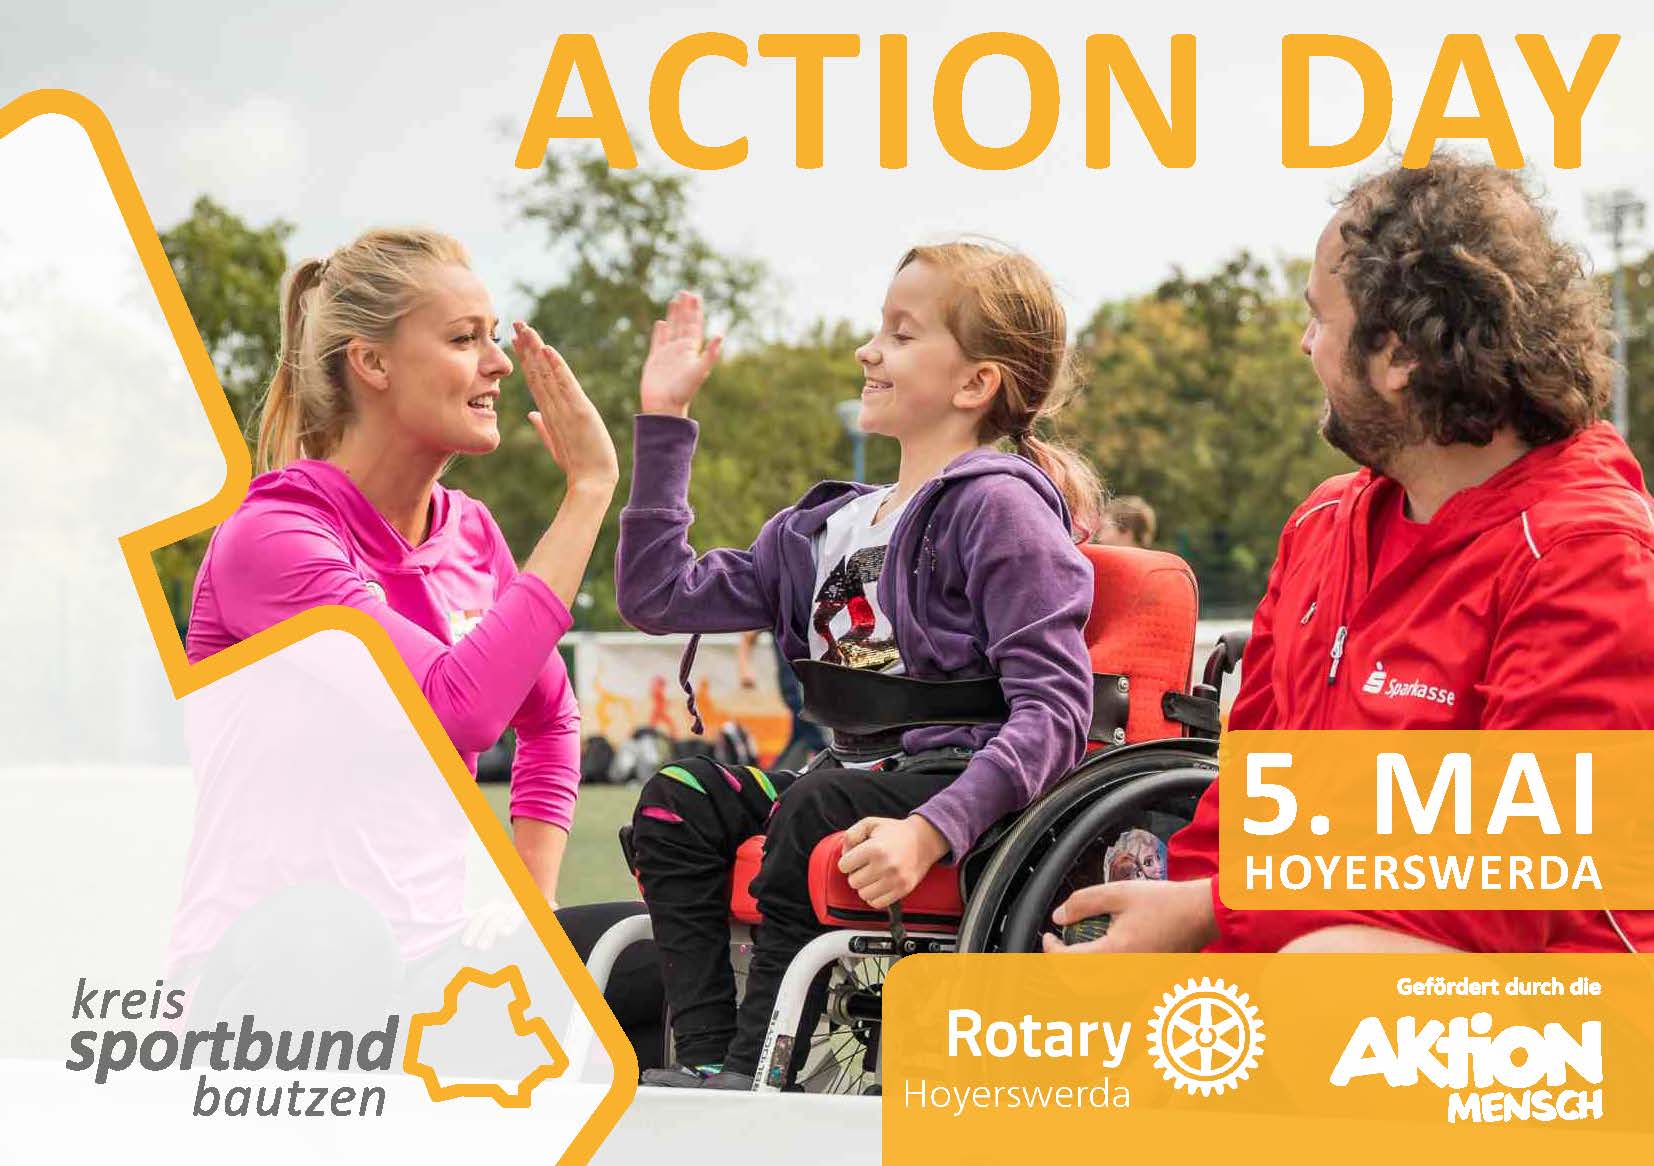 Sportbund Bautzen Newsbild - Action Day in Hoyerswerda